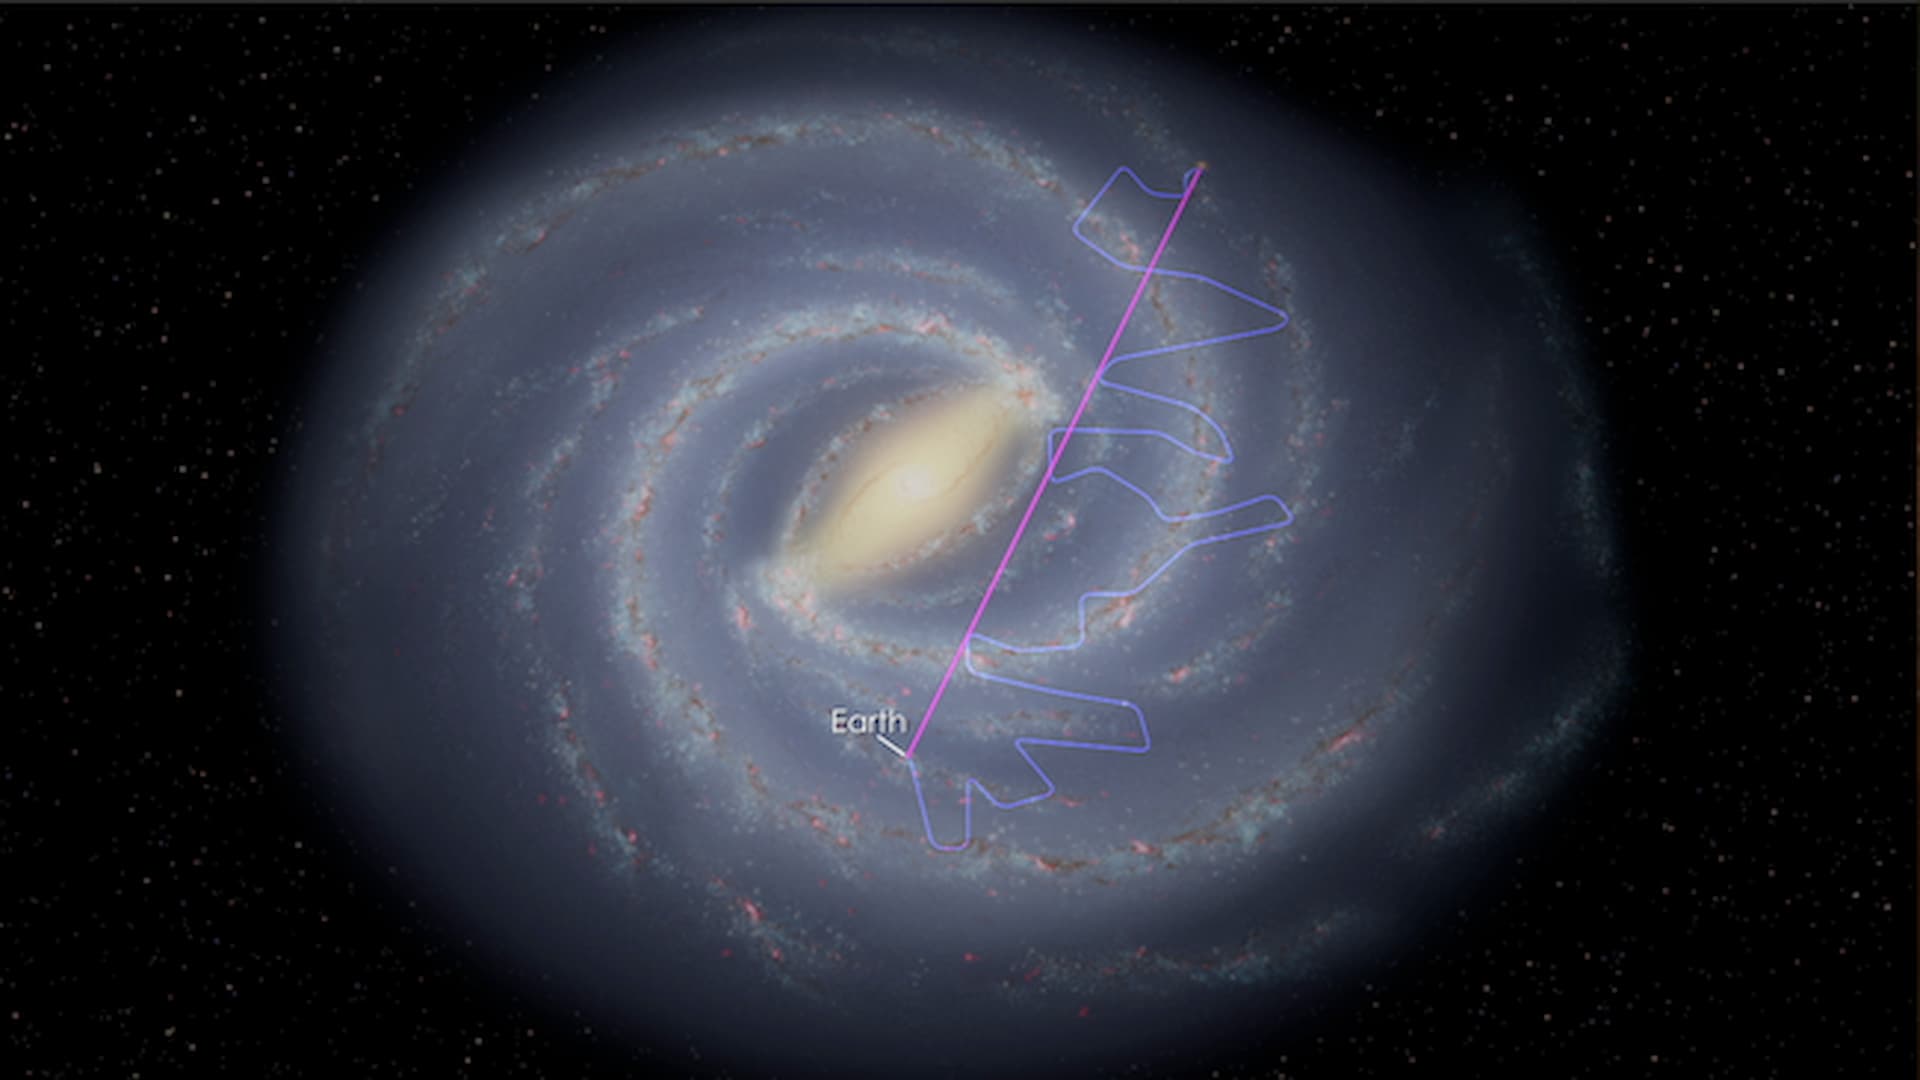 ASI - MoRe-ASI: “Direct Measurement of Galactic Cosmic Rays”